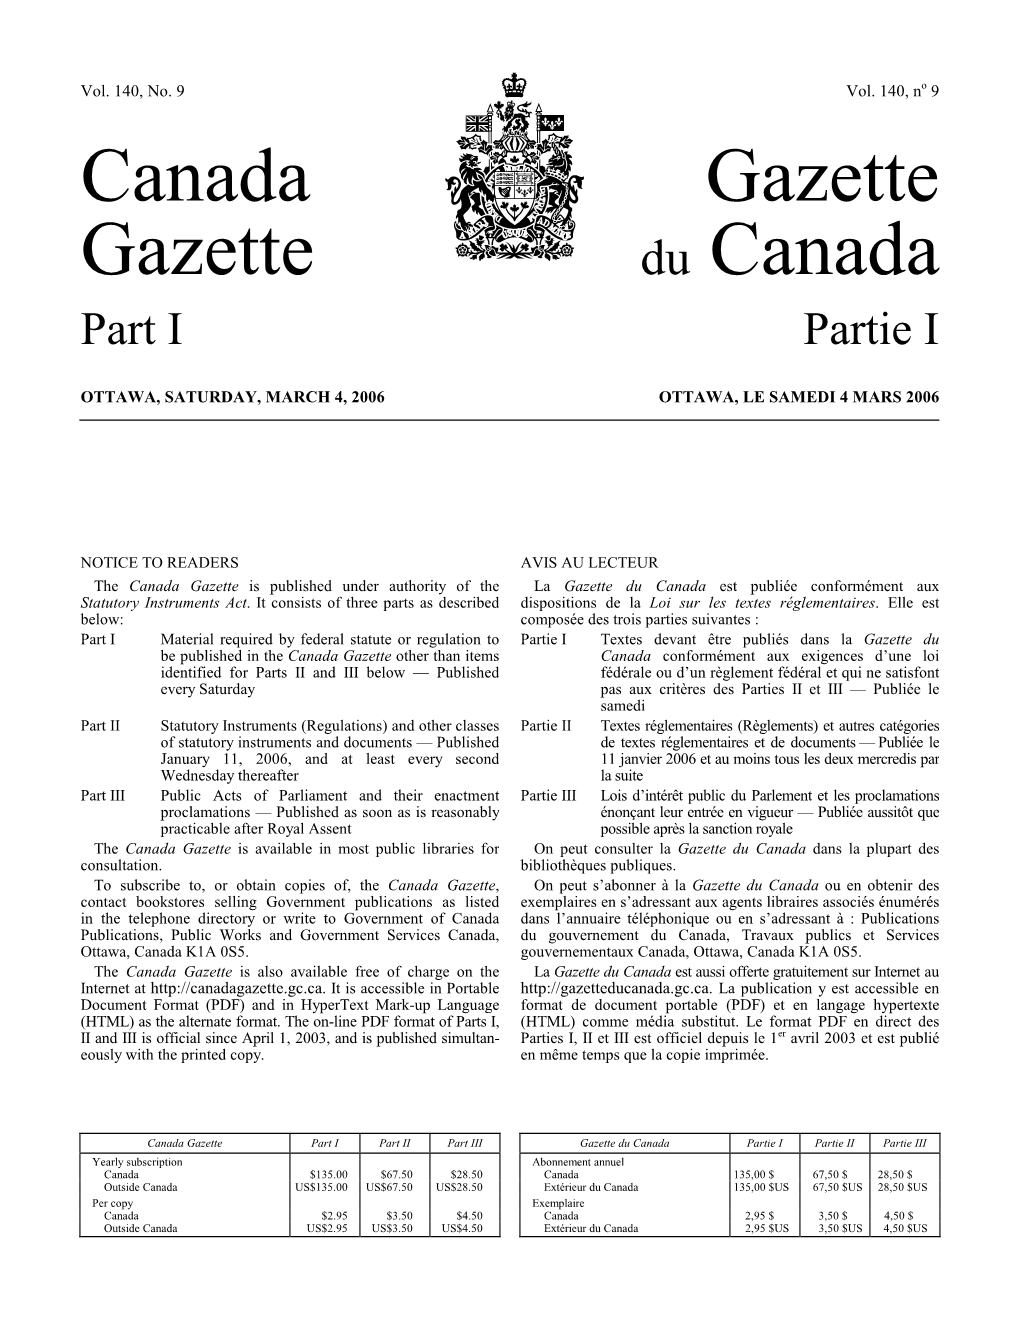 Canada Gazette, Part I, Pursuant Le Présent Avis Est Publié Dans La Partie I De La Gazette Du to Paragraphs 71(1)(A) and (B) of the Act